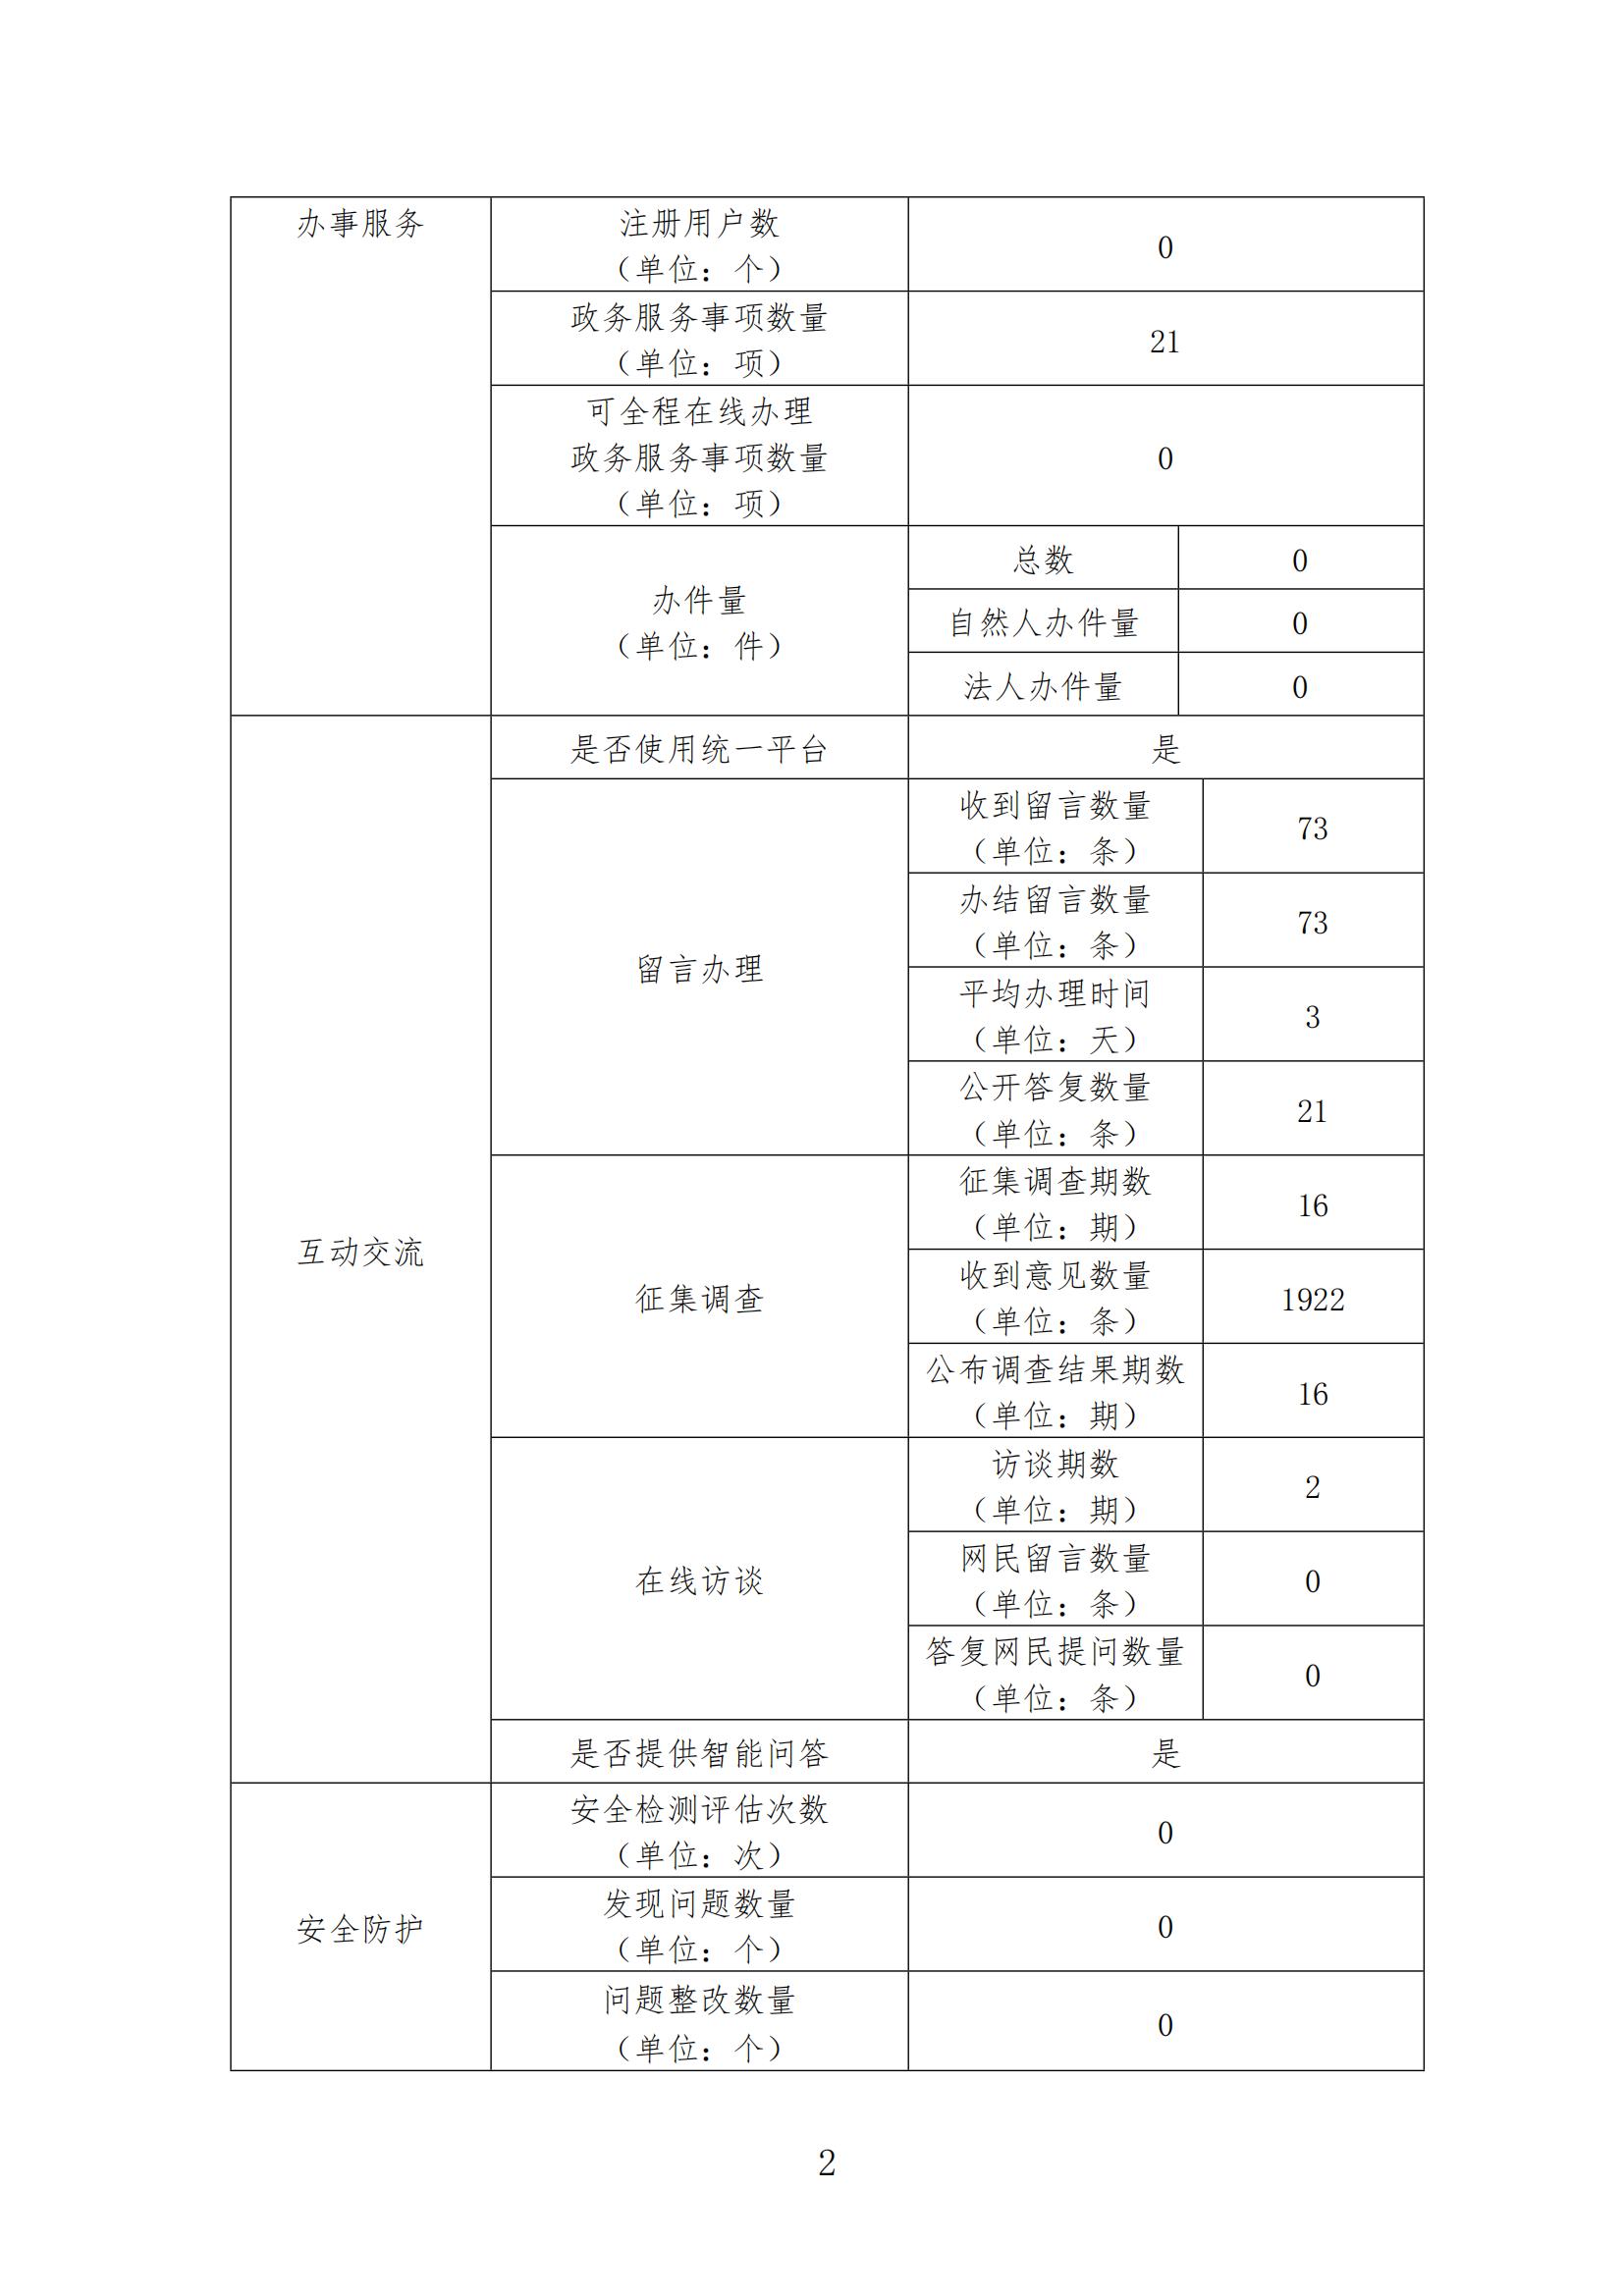 怀仁市政府门户网站年度工作报表 （2021年度）-2